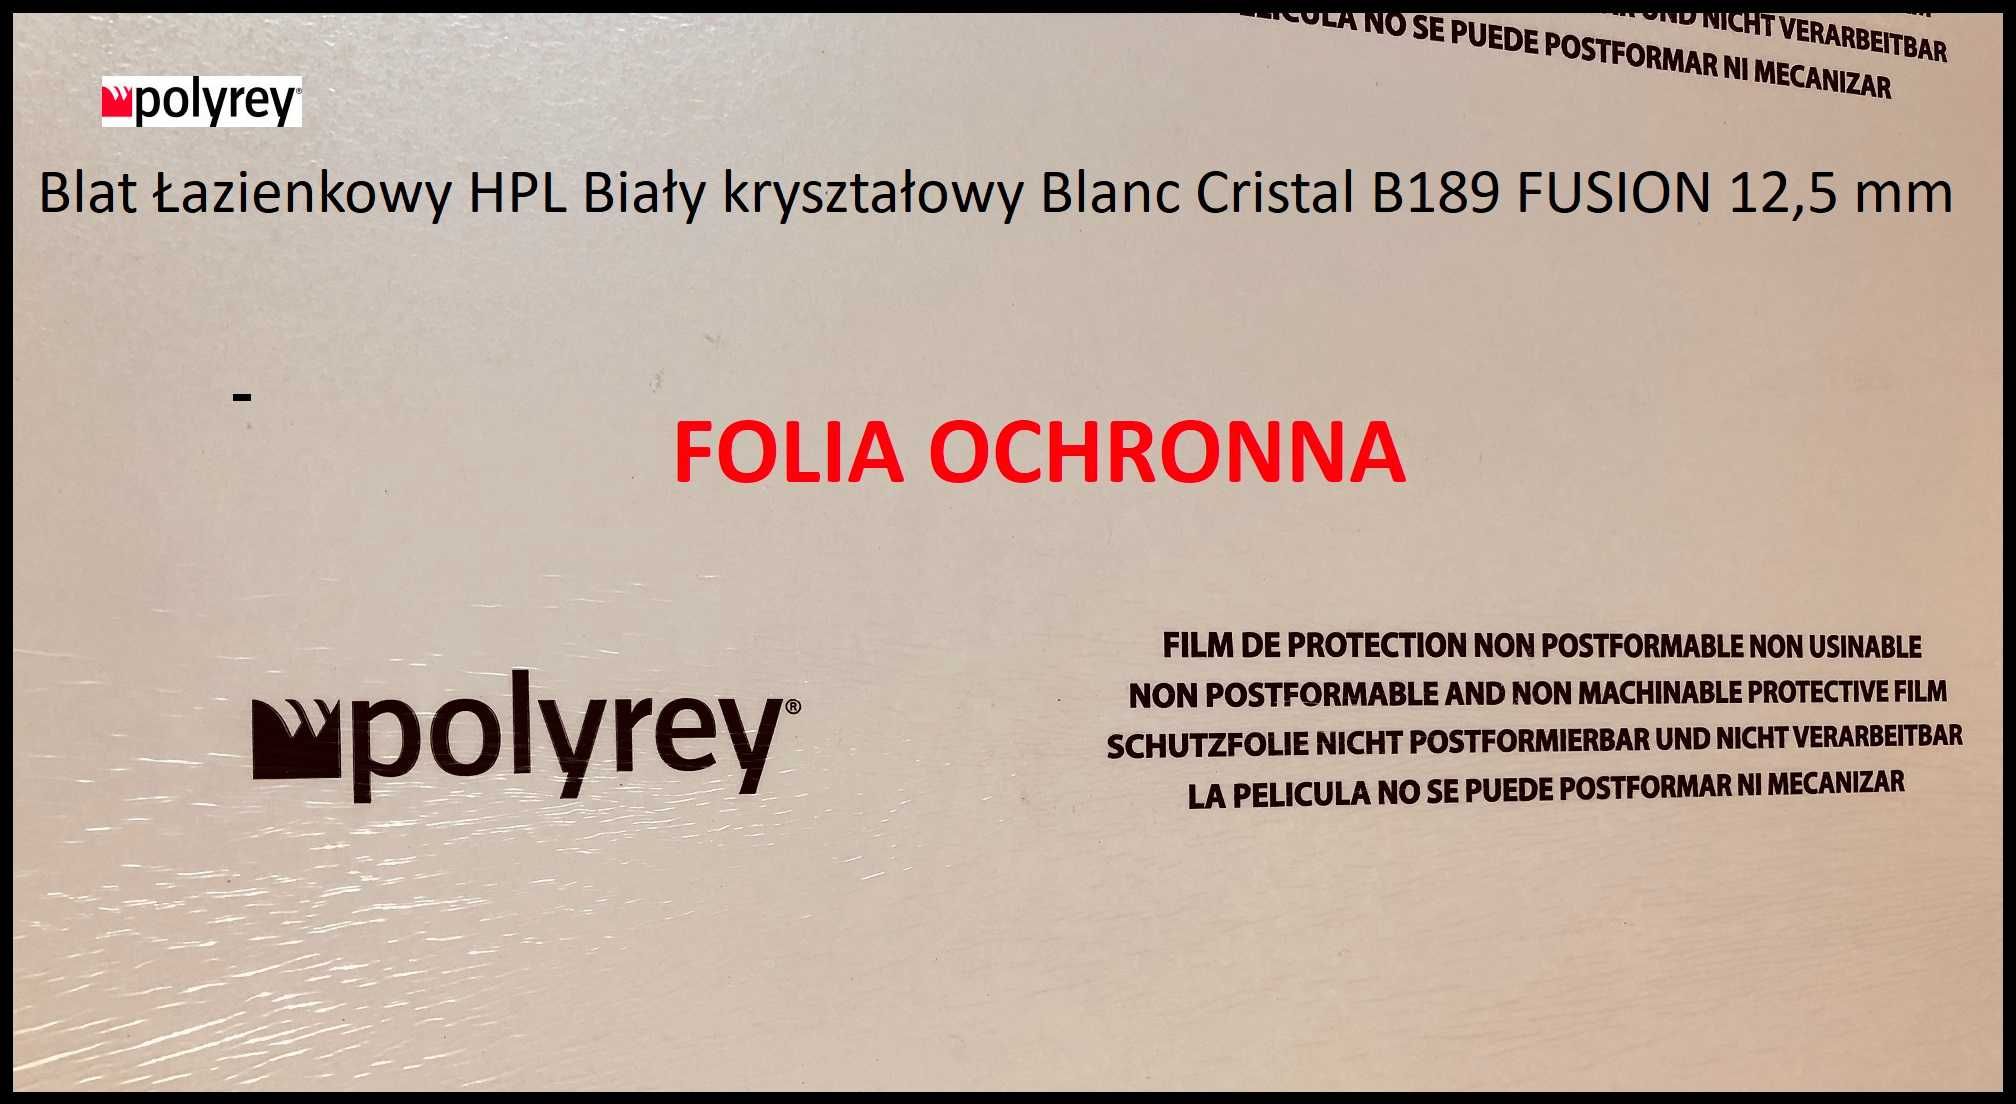 Blat 100 % wodoodporny Polyrey HPL Blanc Cristal B189 śnieżnobiały